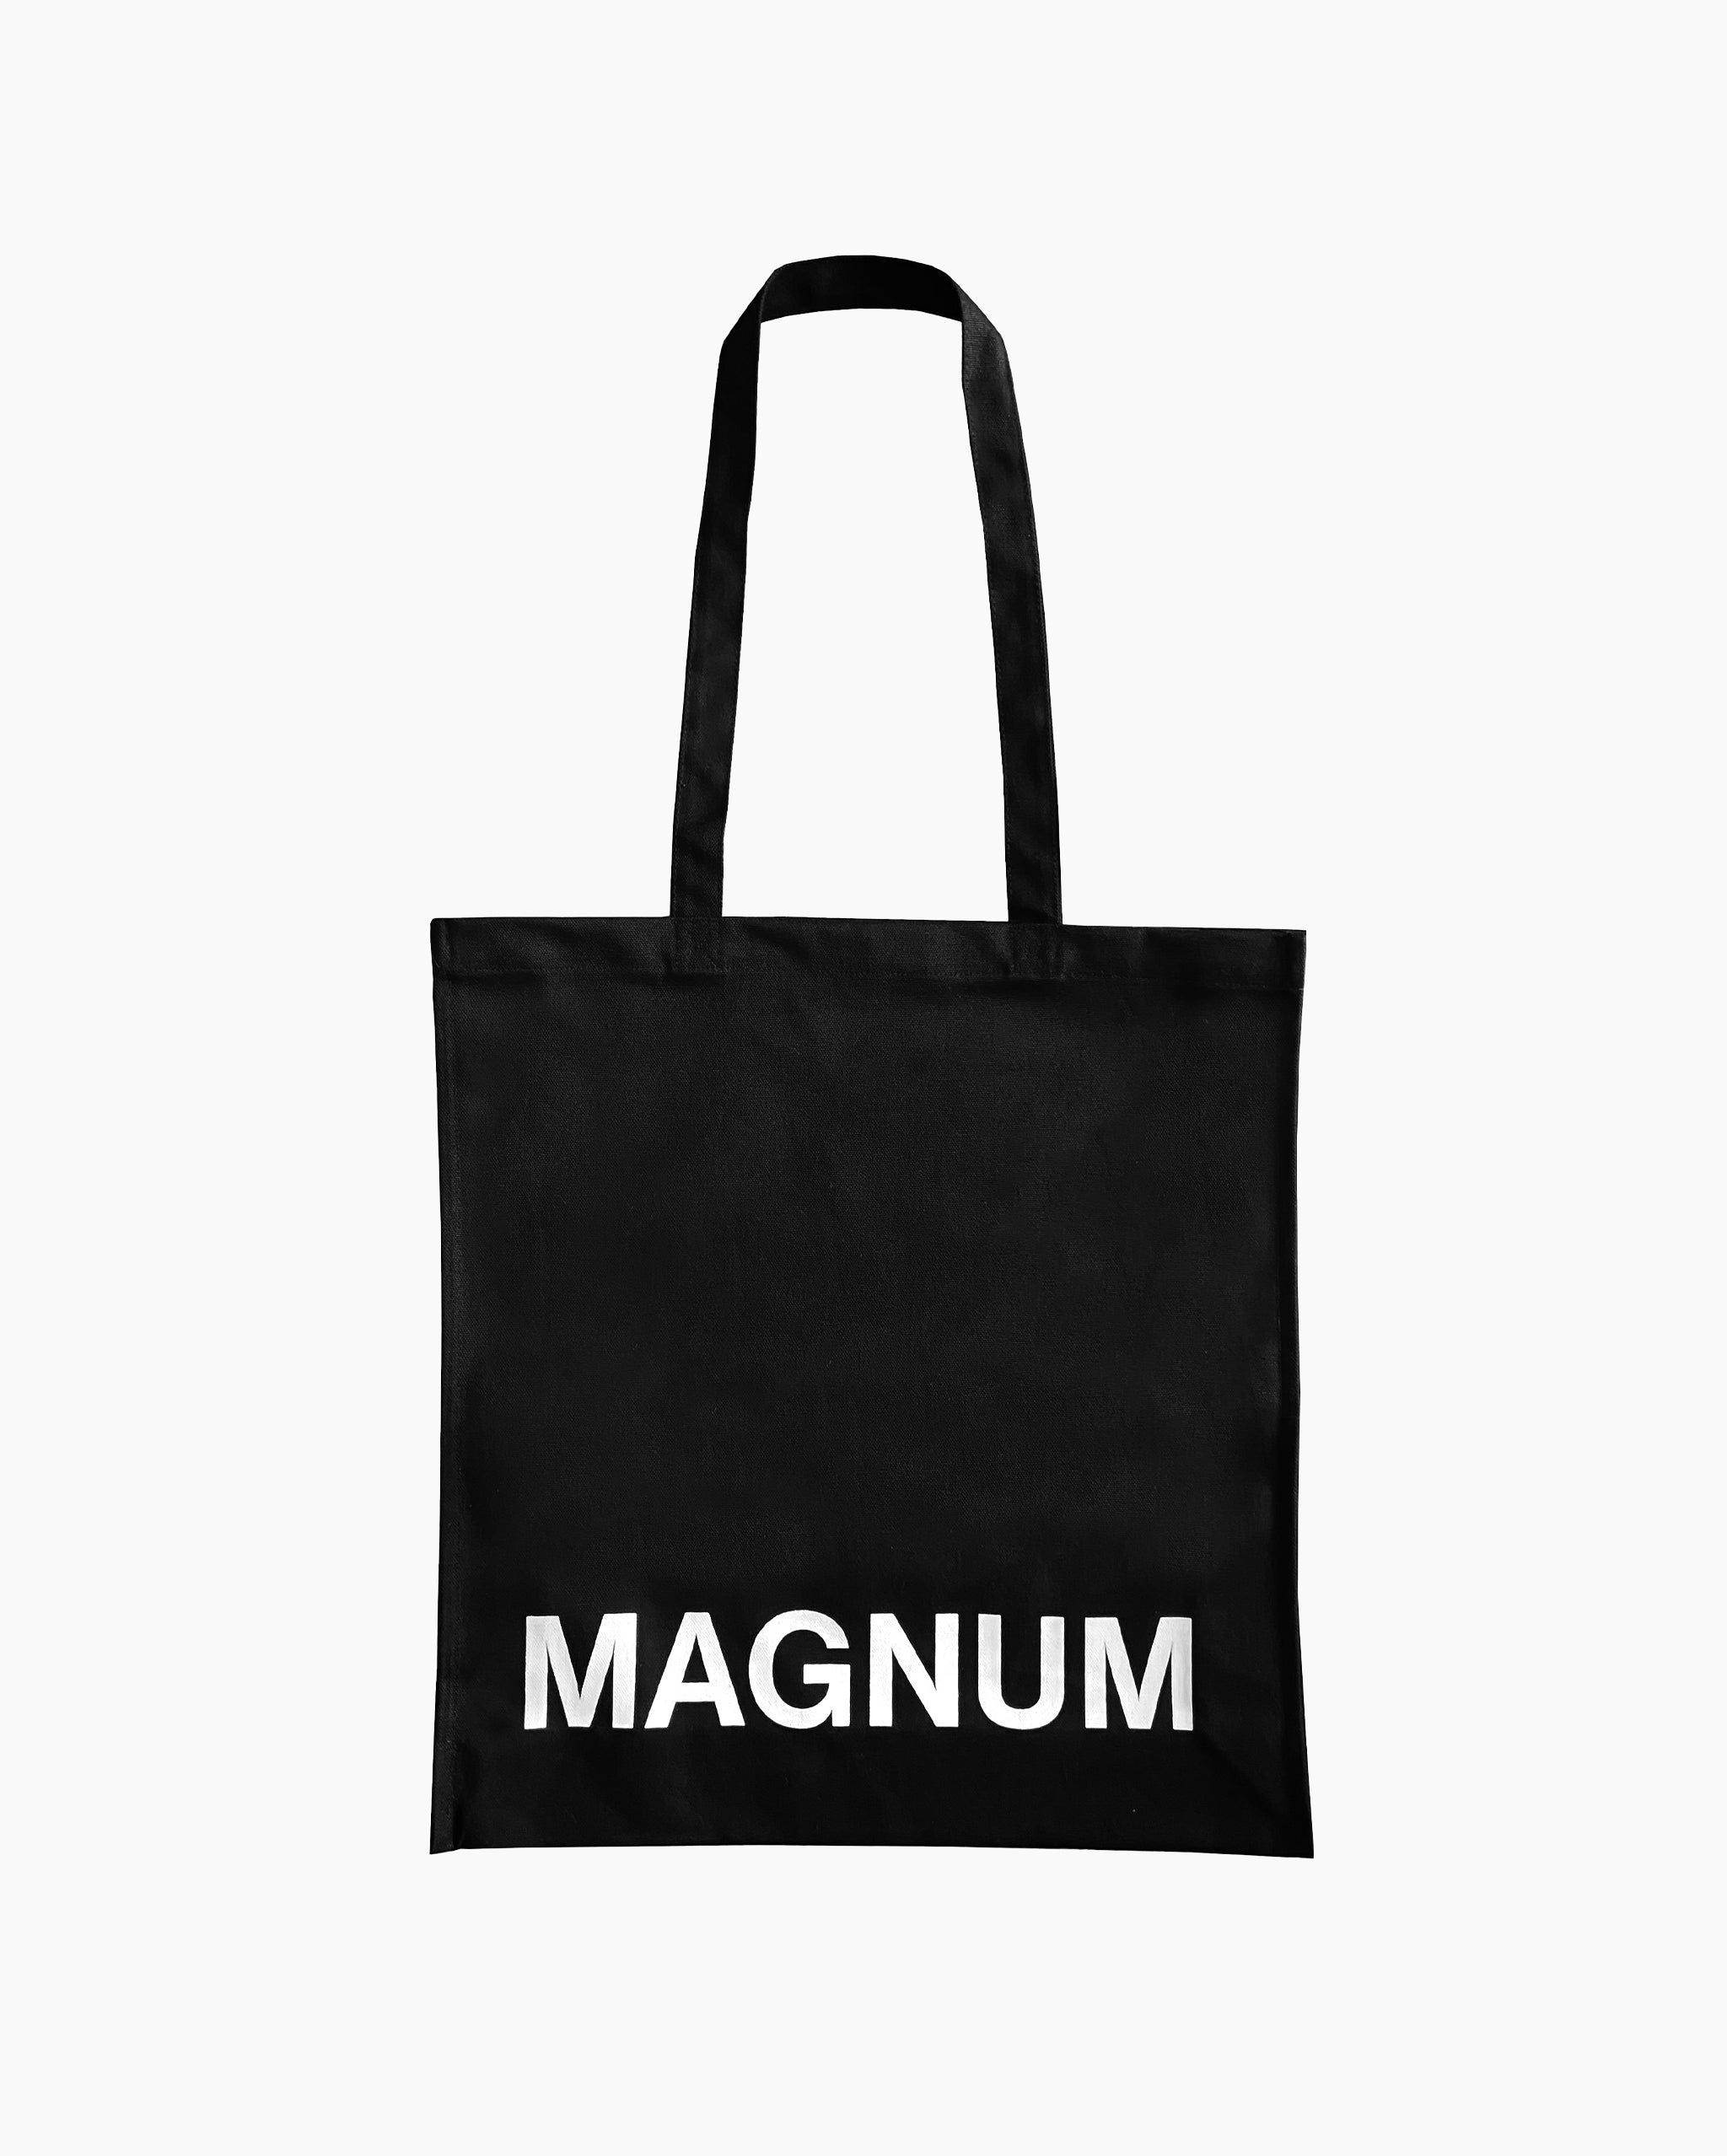 Magnum Tote Bag